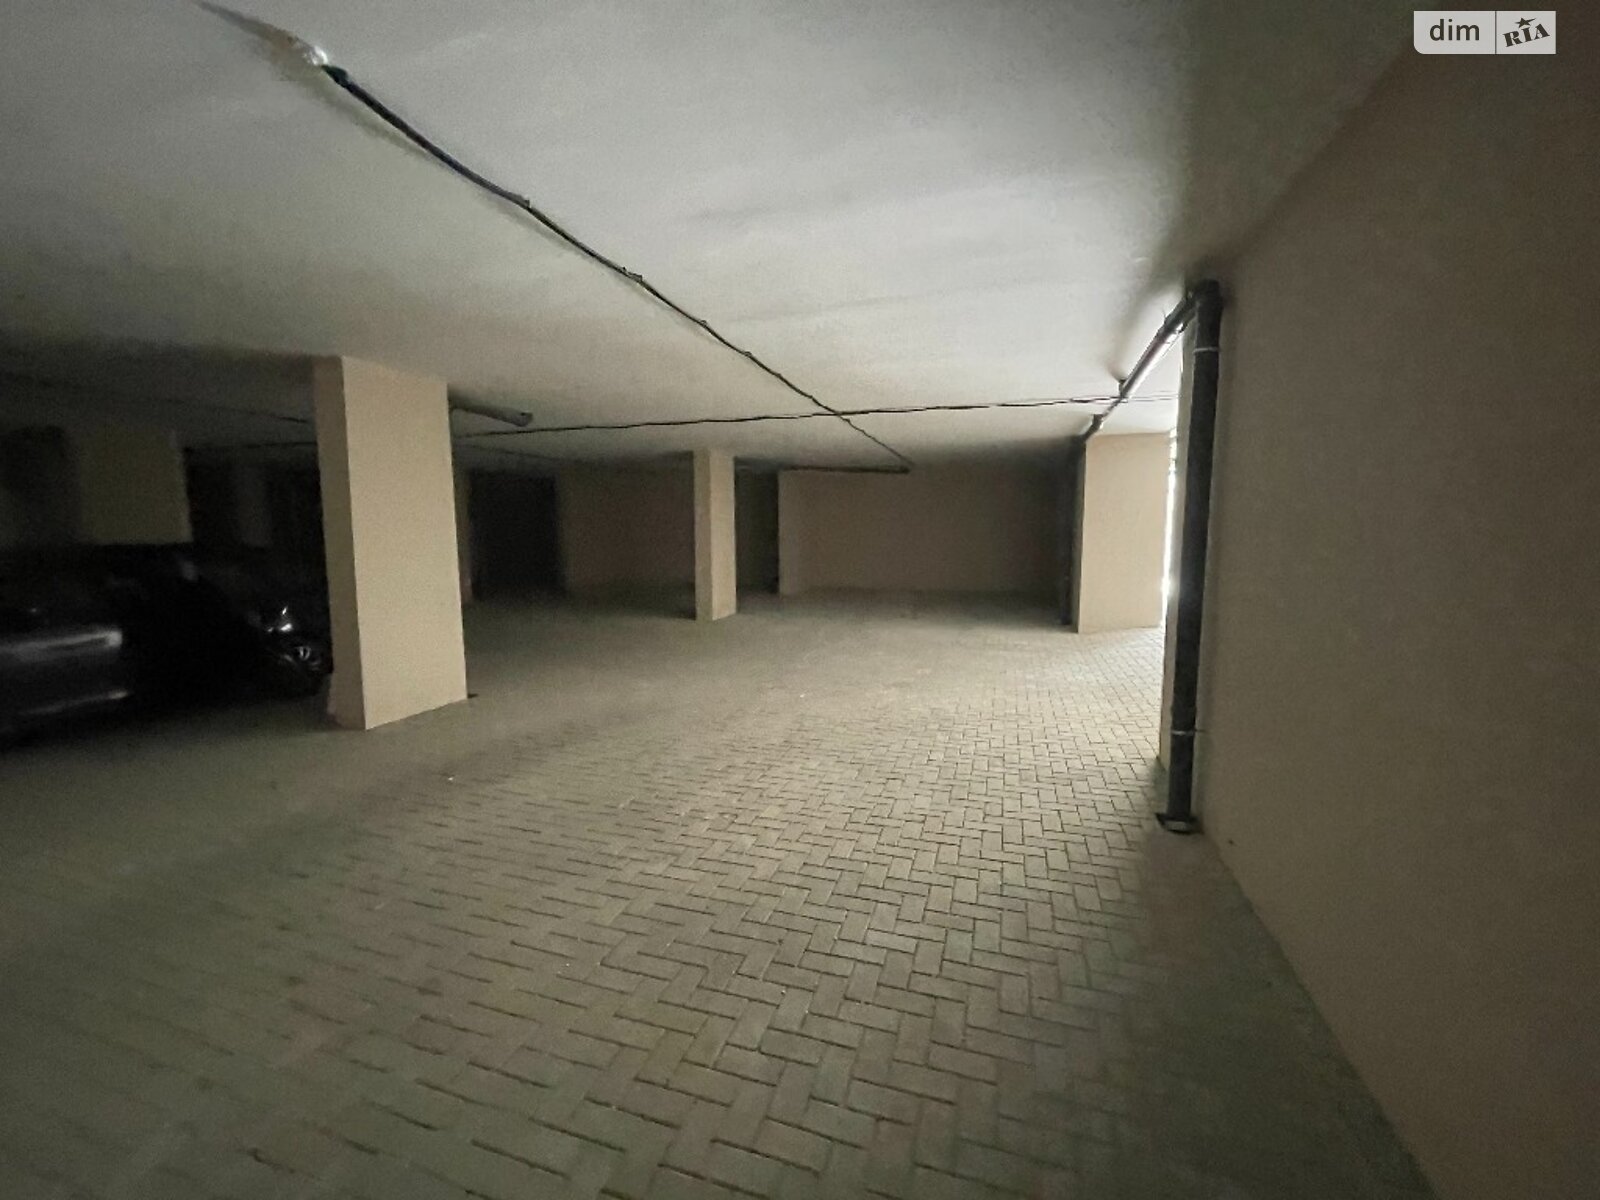 Место в подземном паркинге под легковое авто в Одессе, площадь 17.25 кв.м. фото 1